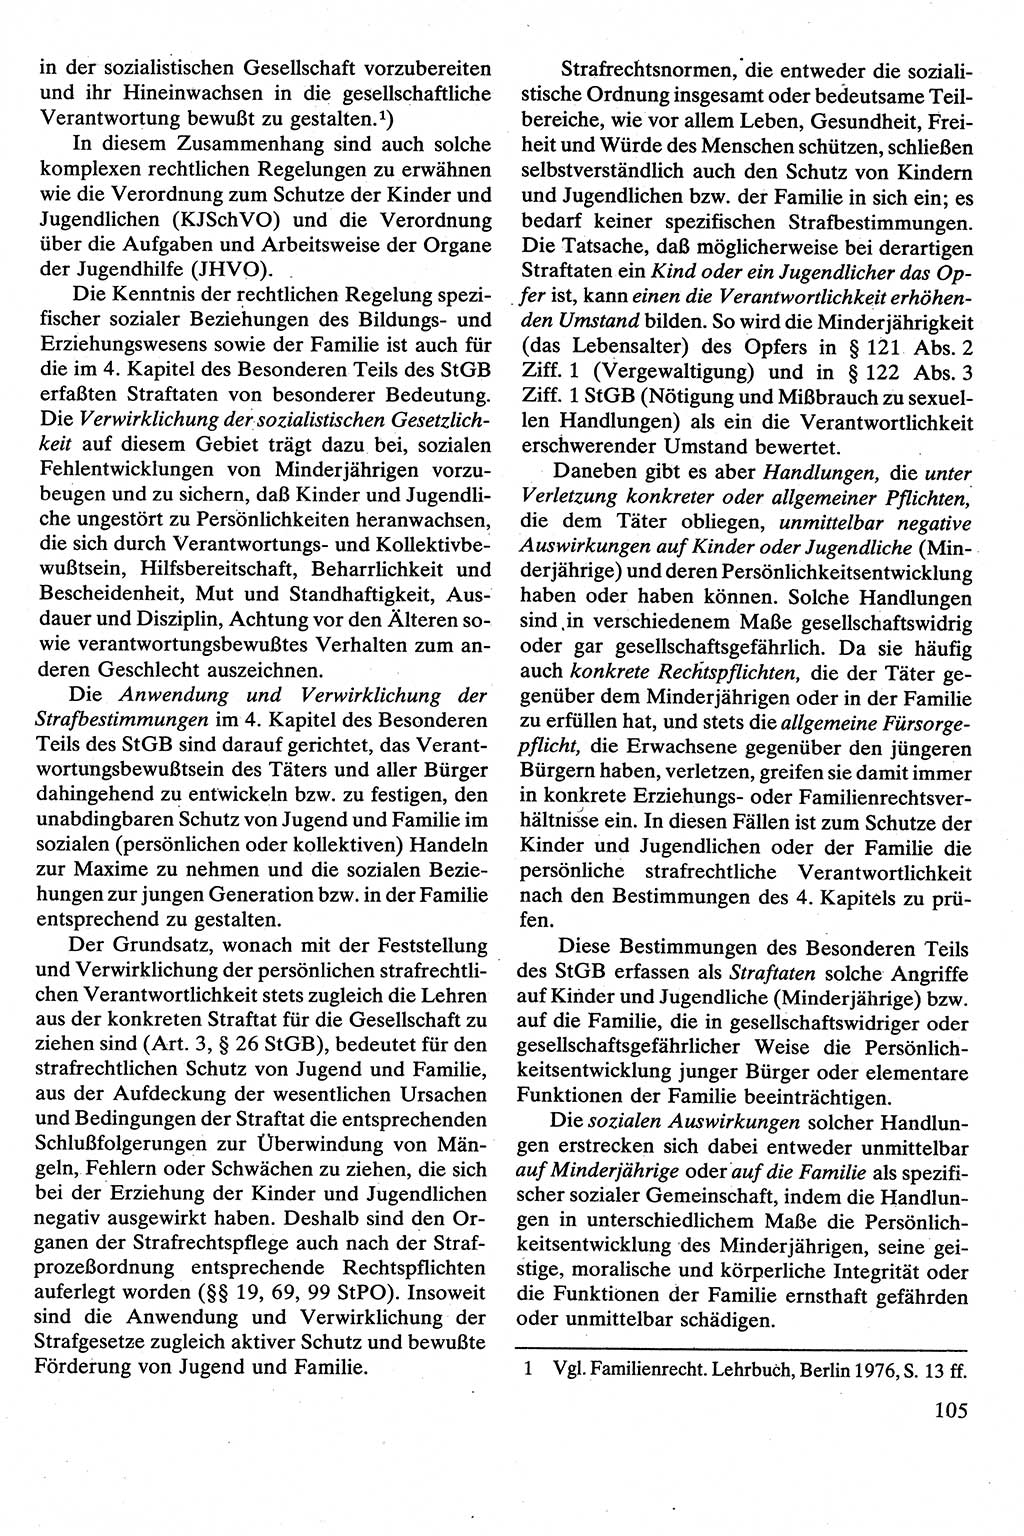 Strafrecht [Deutsche Demokratische Republik (DDR)], Besonderer Teil, Lehrbuch 1981, Seite 105 (Strafr. DDR BT Lb. 1981, S. 105)